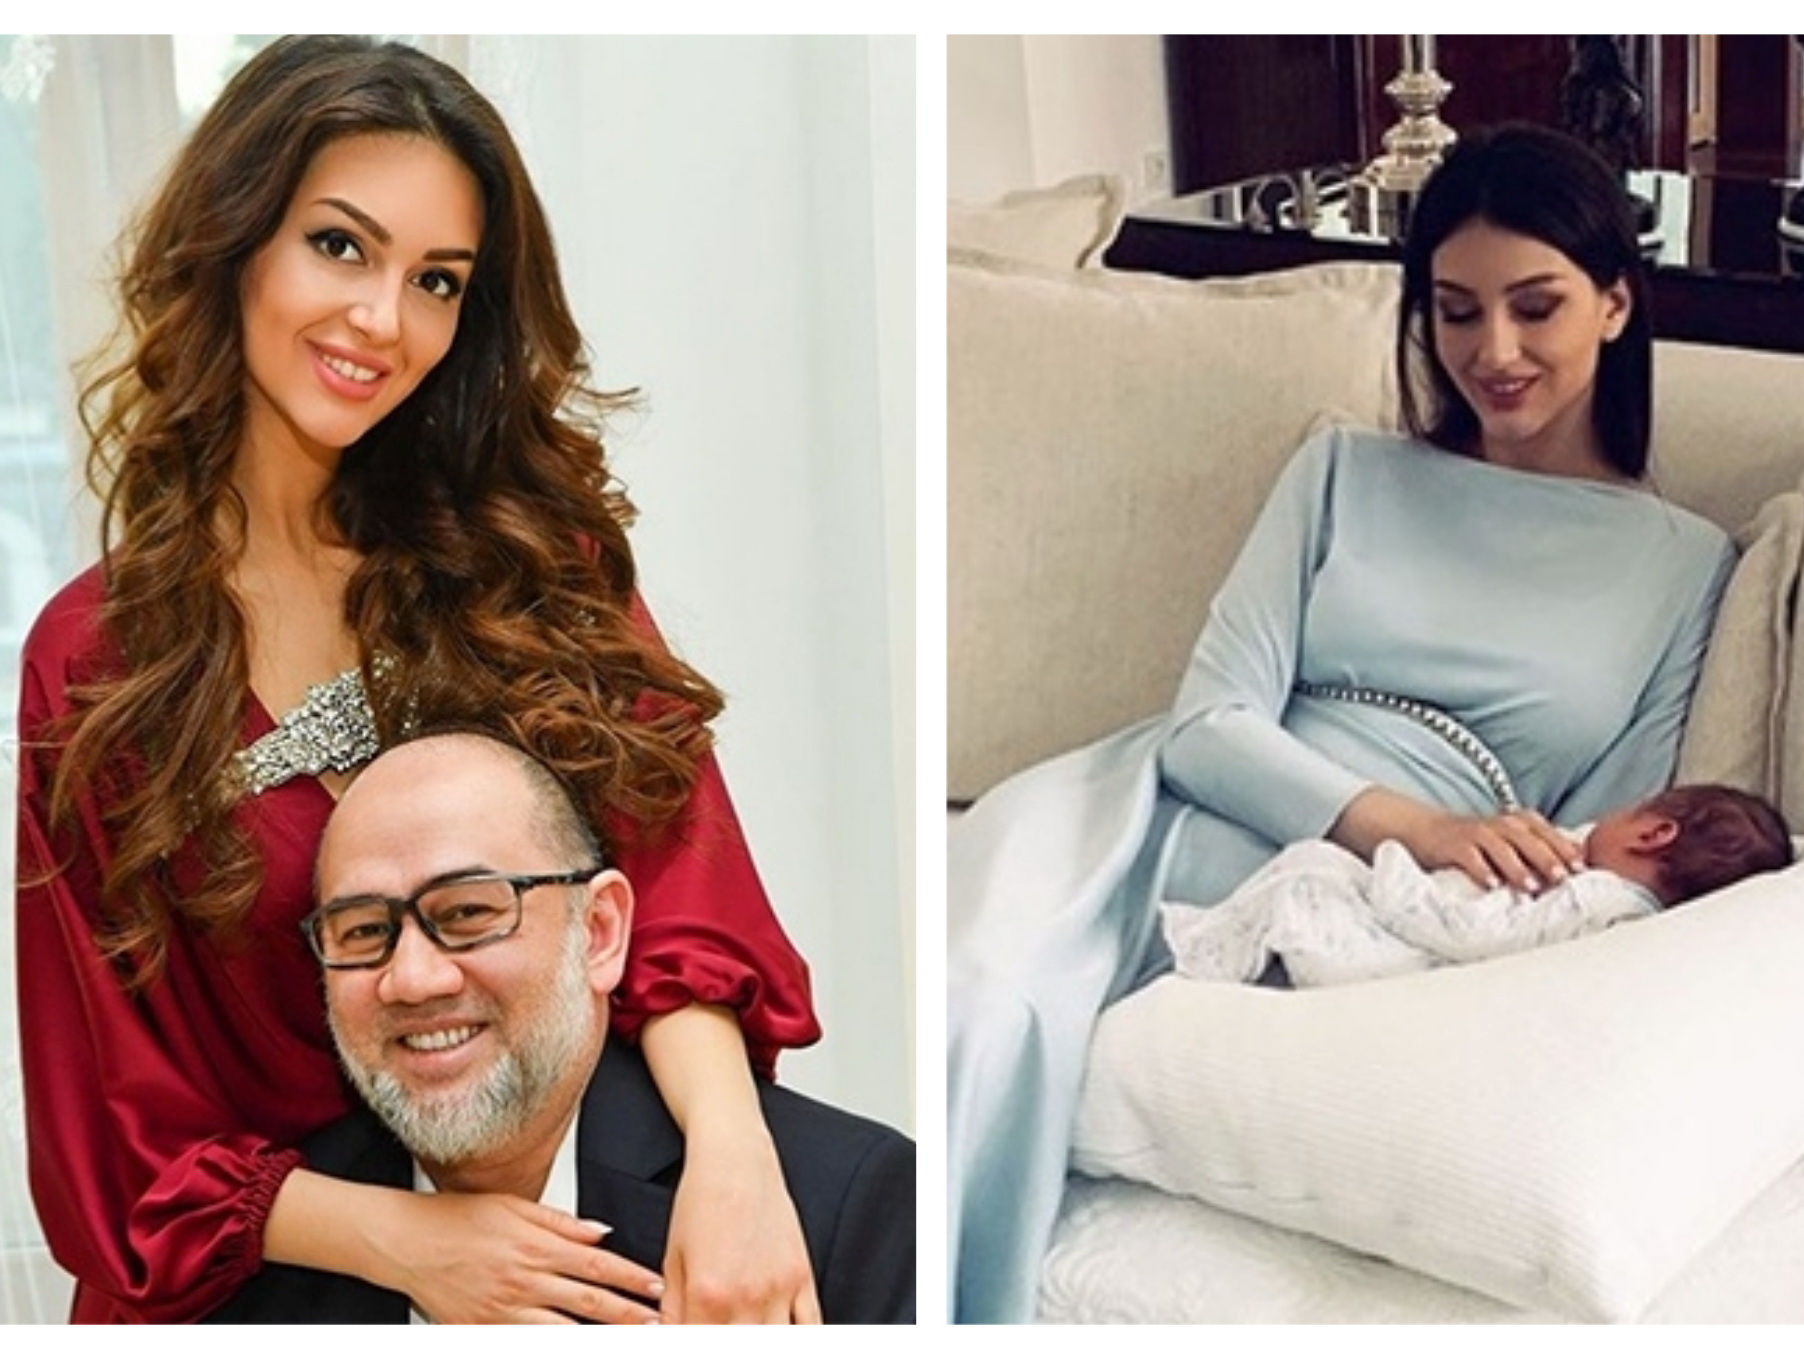 СМИ: Бывший король Малайзии развелся с «Мисс Москва-2015» спустя 2 месяца после рождения сына - ФОТО